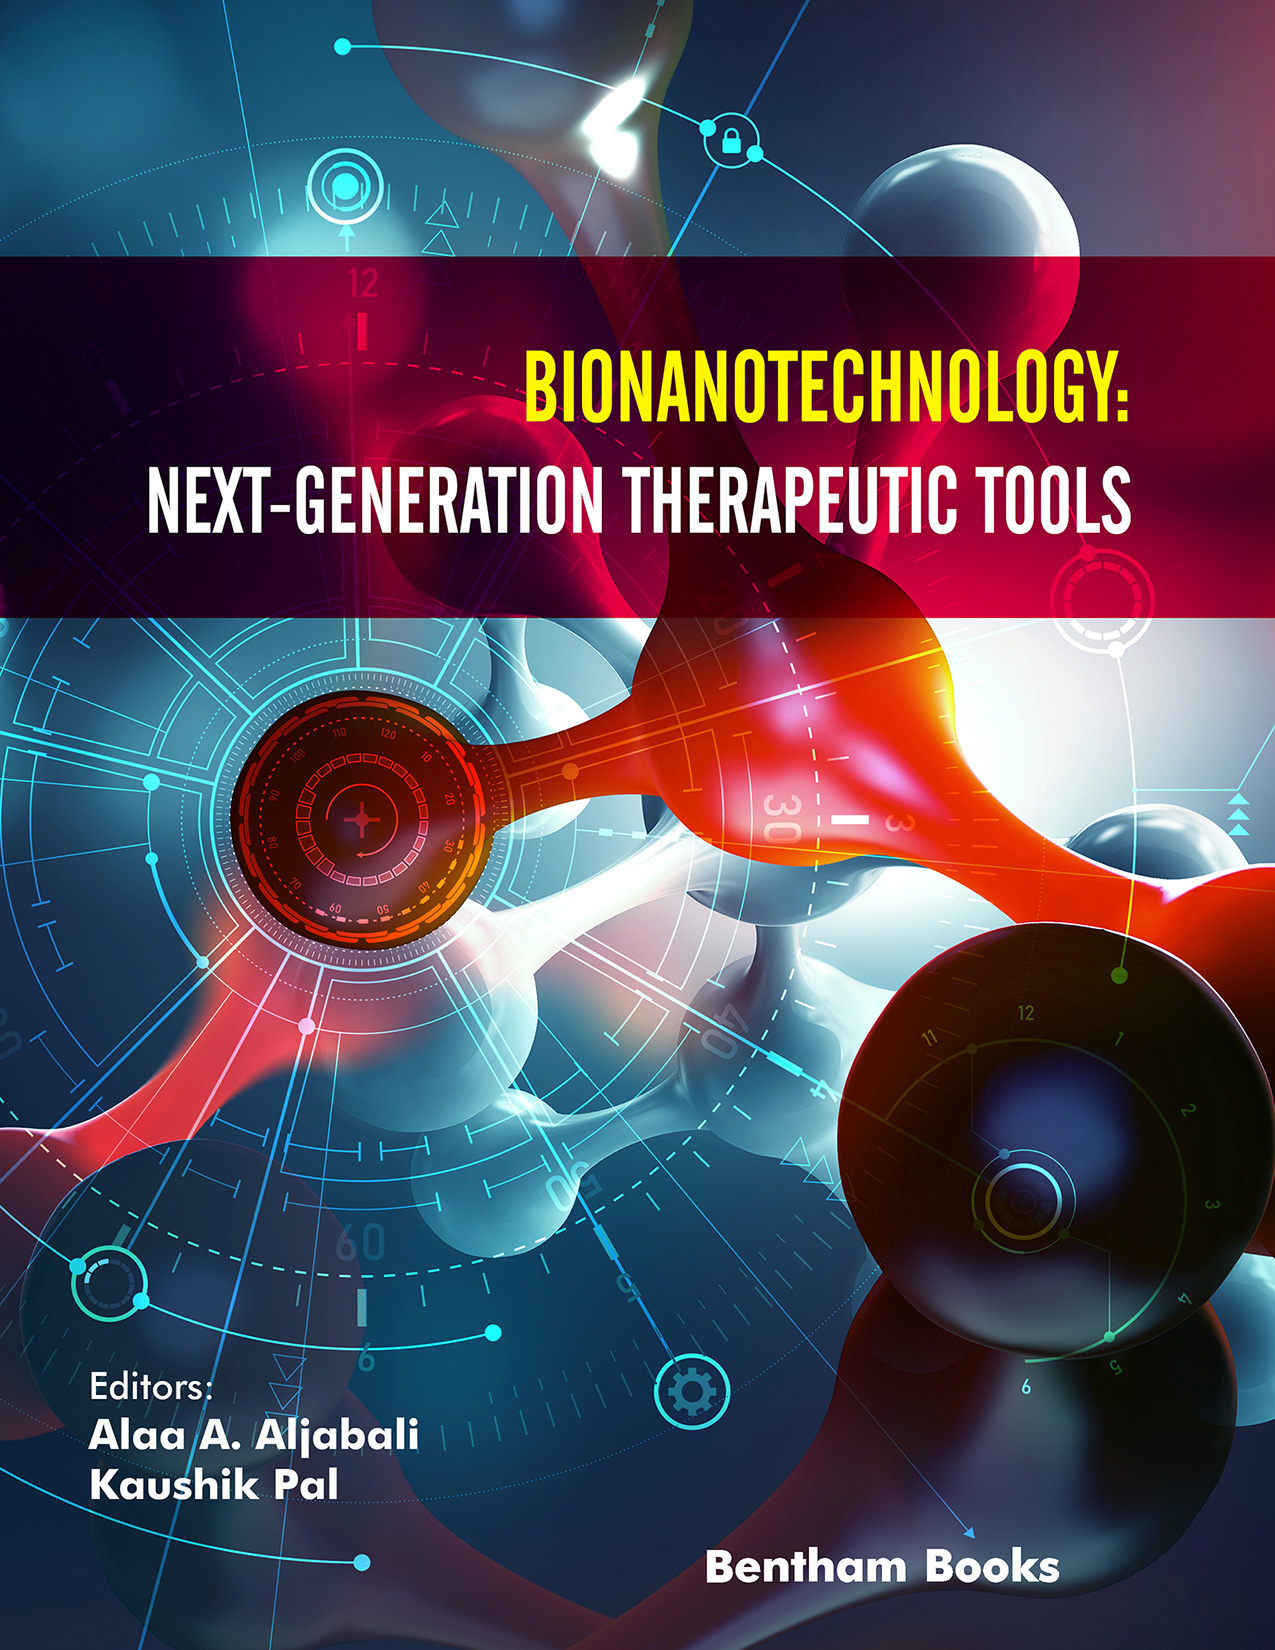 Bionanotechnology: Next-Generation Therapeutic Tools